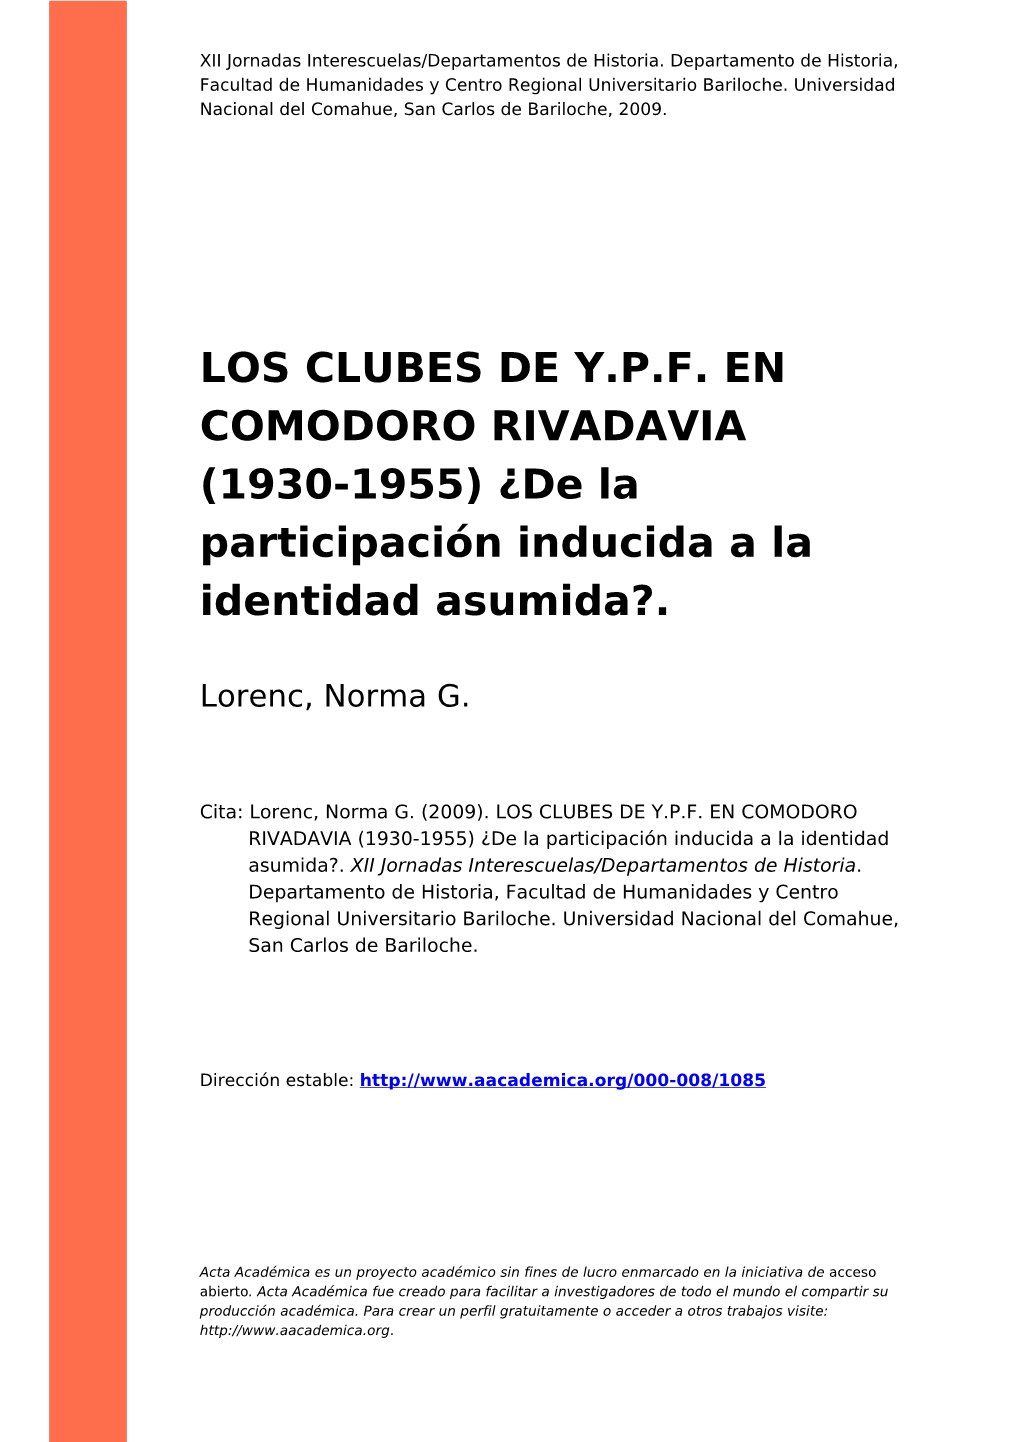 LOS CLUBES DE Y.P.F. EN COMODORO RIVADAVIA (1930-1955) ¿De La Participación Inducida a La Identidad Asumida?